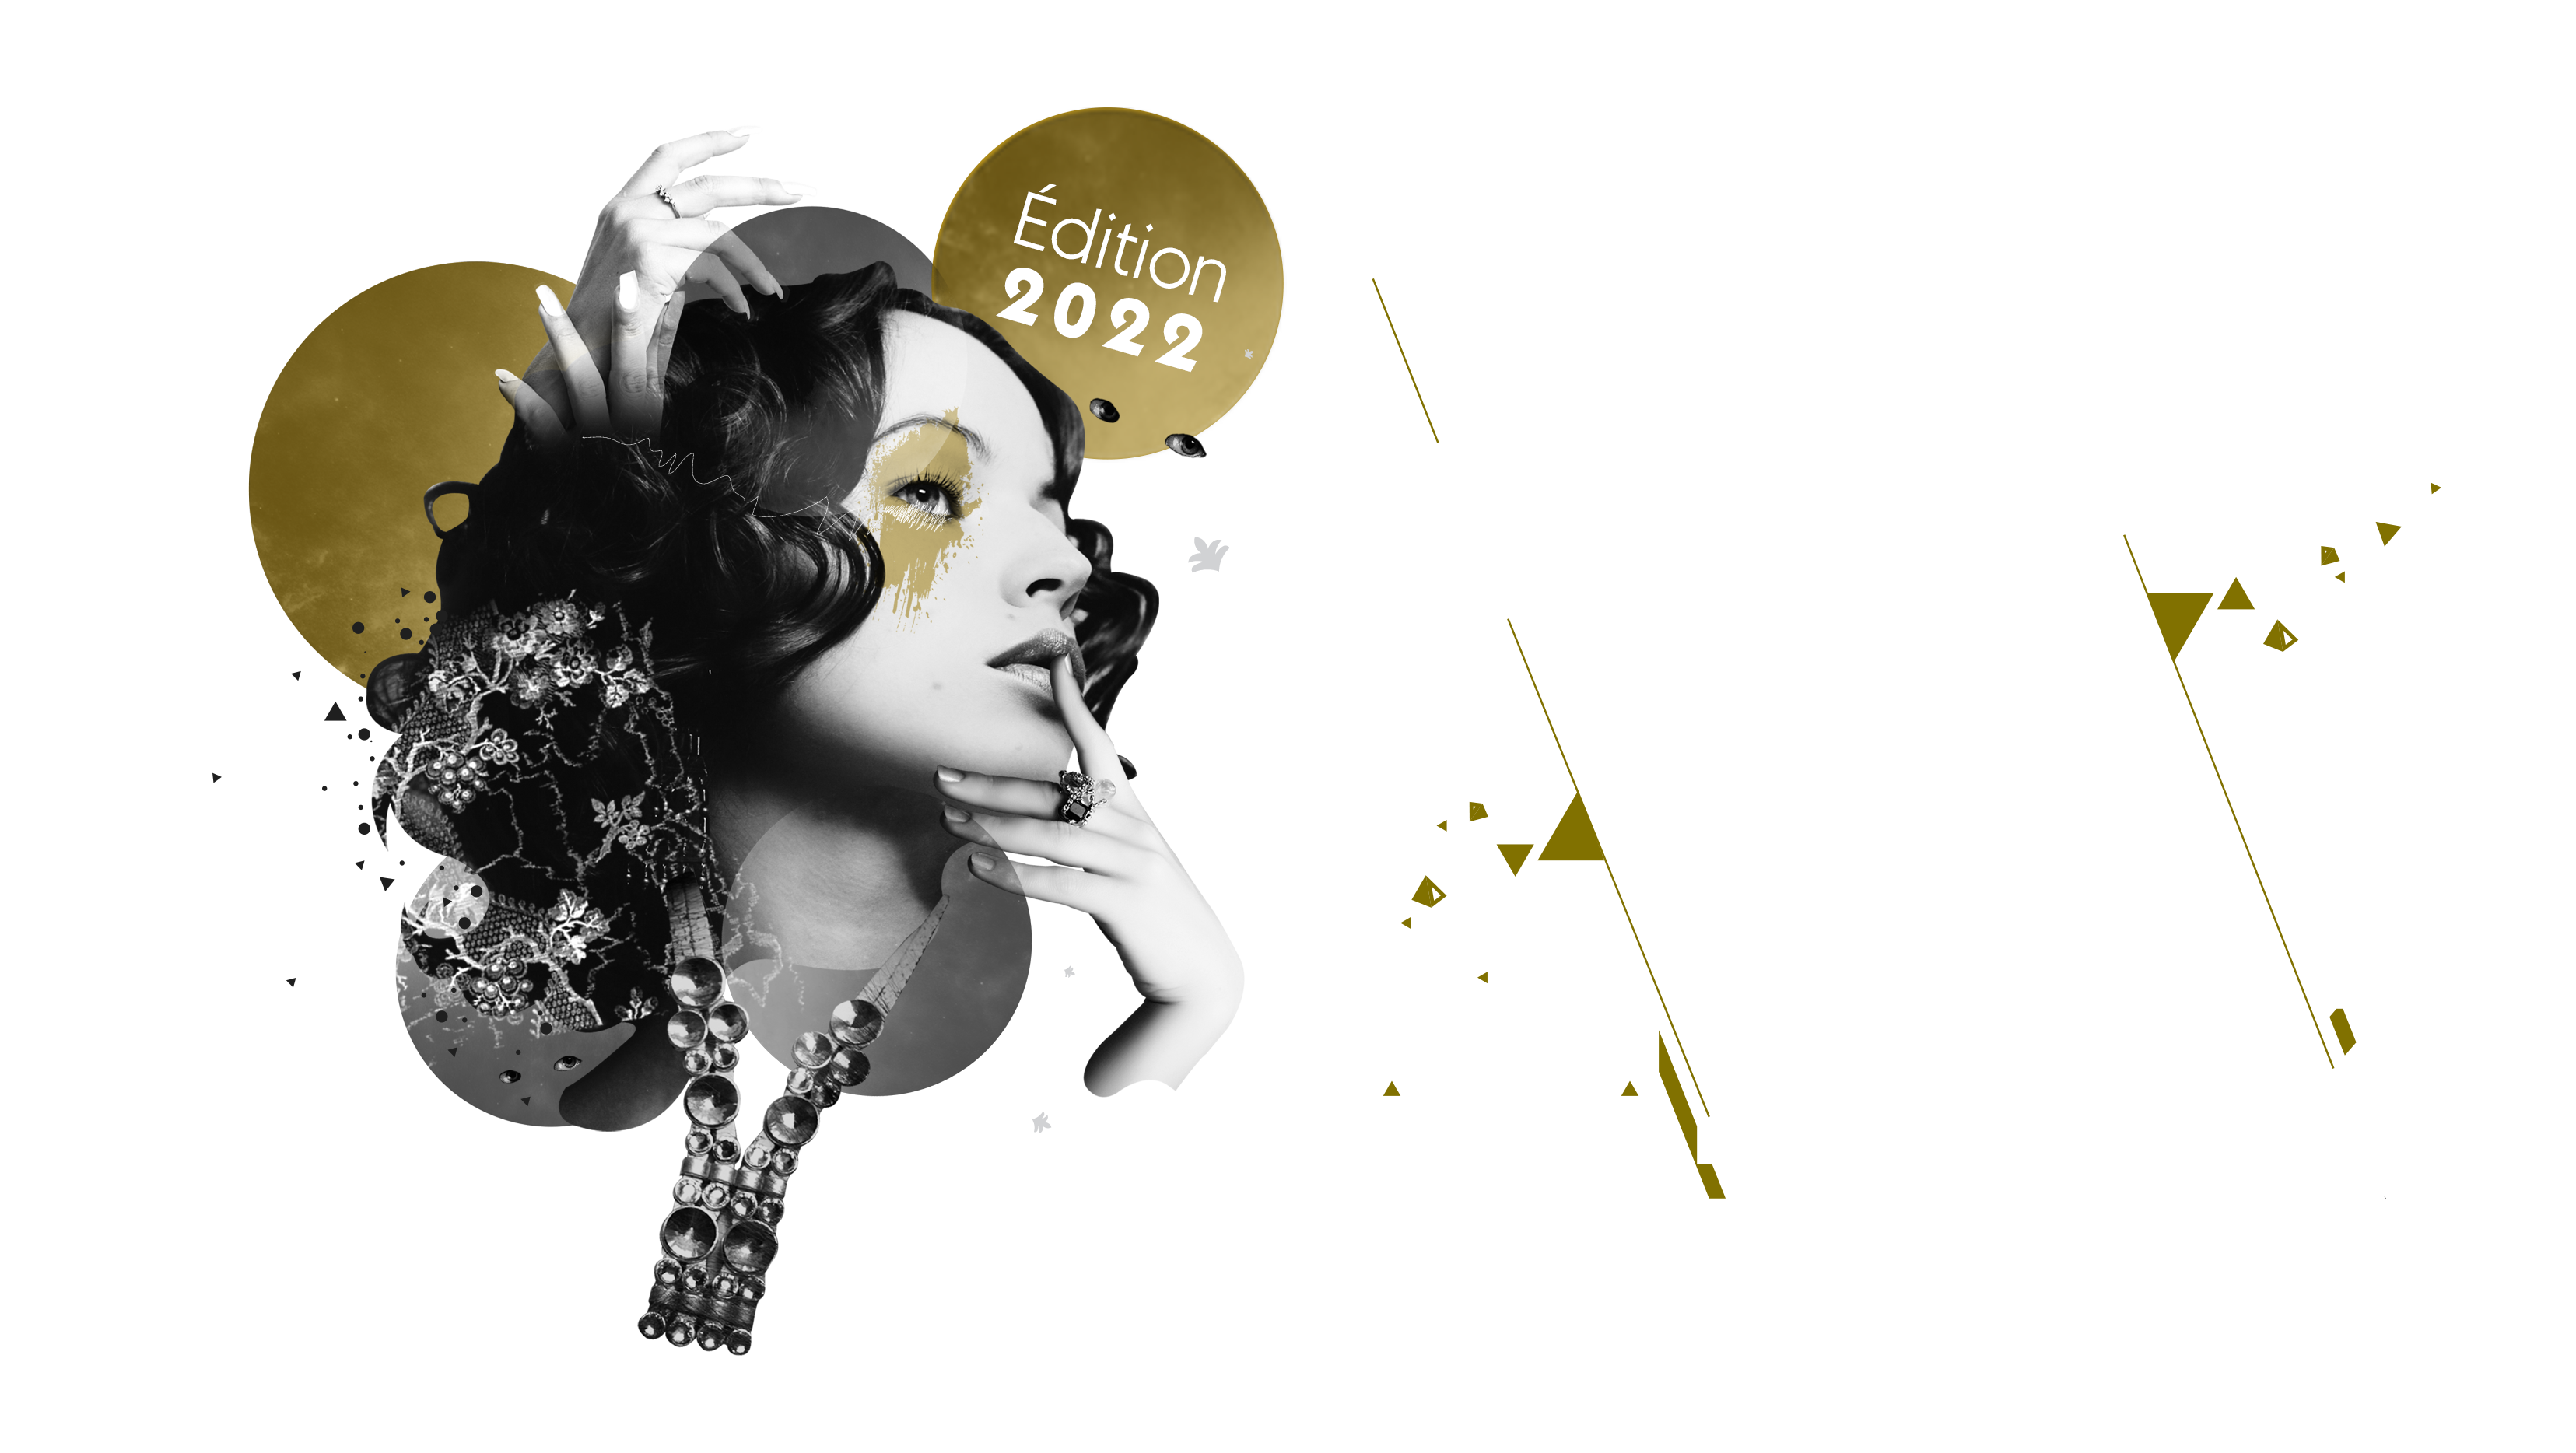 Les Folies Nobles Black, a concept by Benoit Charlier - photo 4